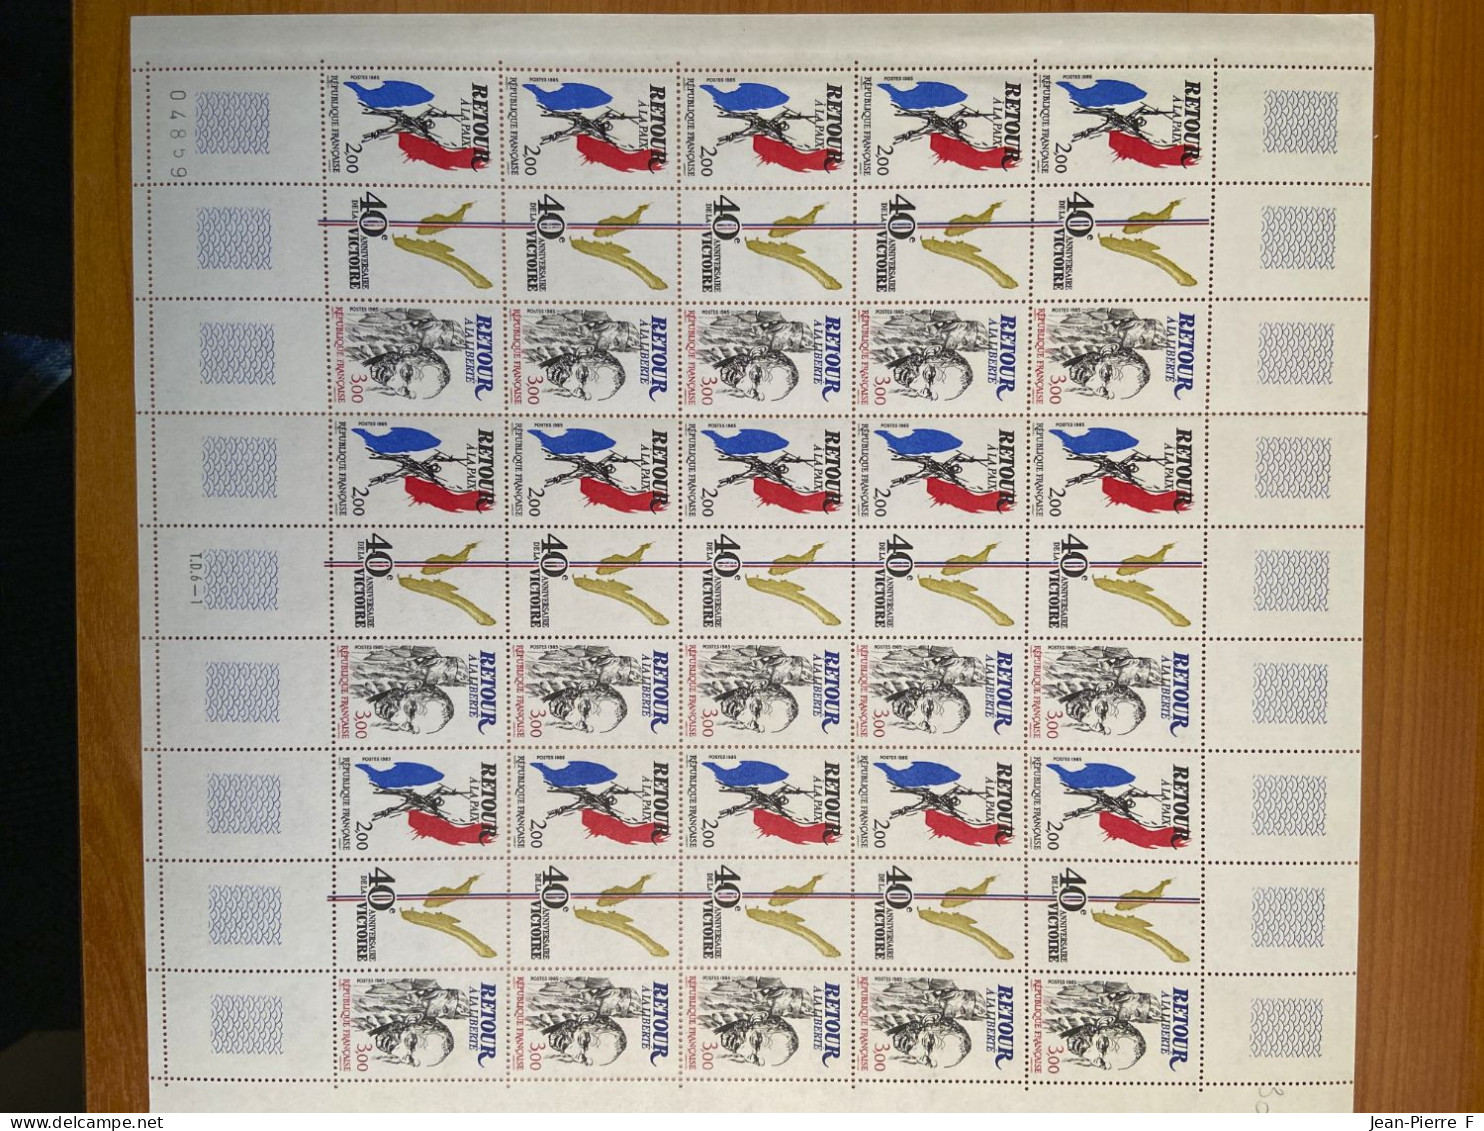 Lot de 17 feuilles / planches entières de timbres